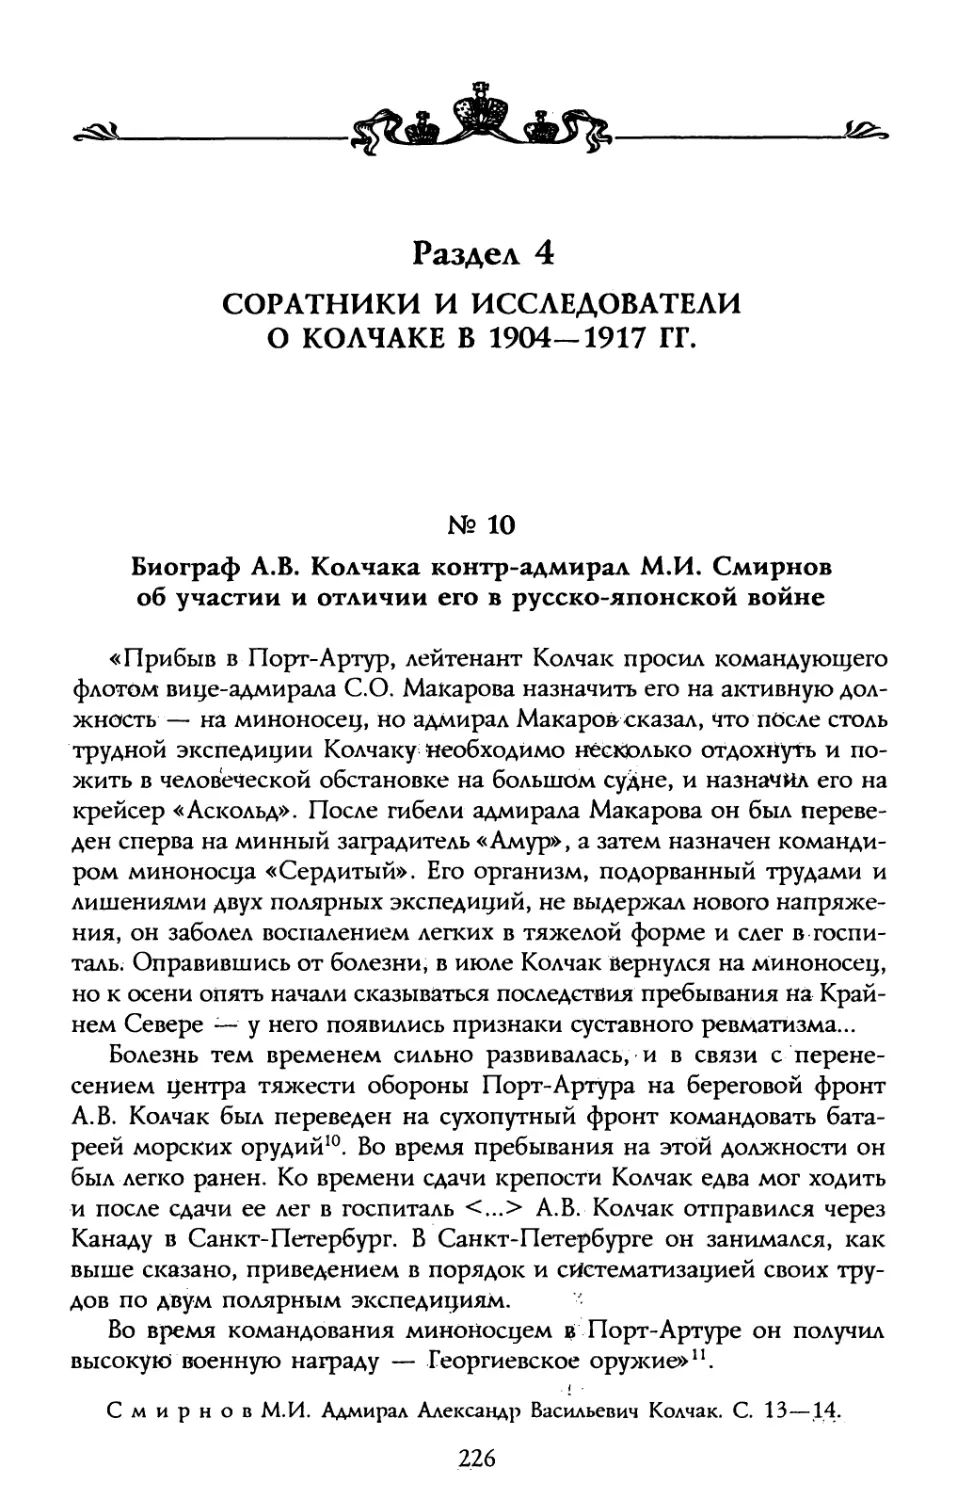 Раздел 4. Соратники и исследователи о Колчаке в 1904—1917 гг..